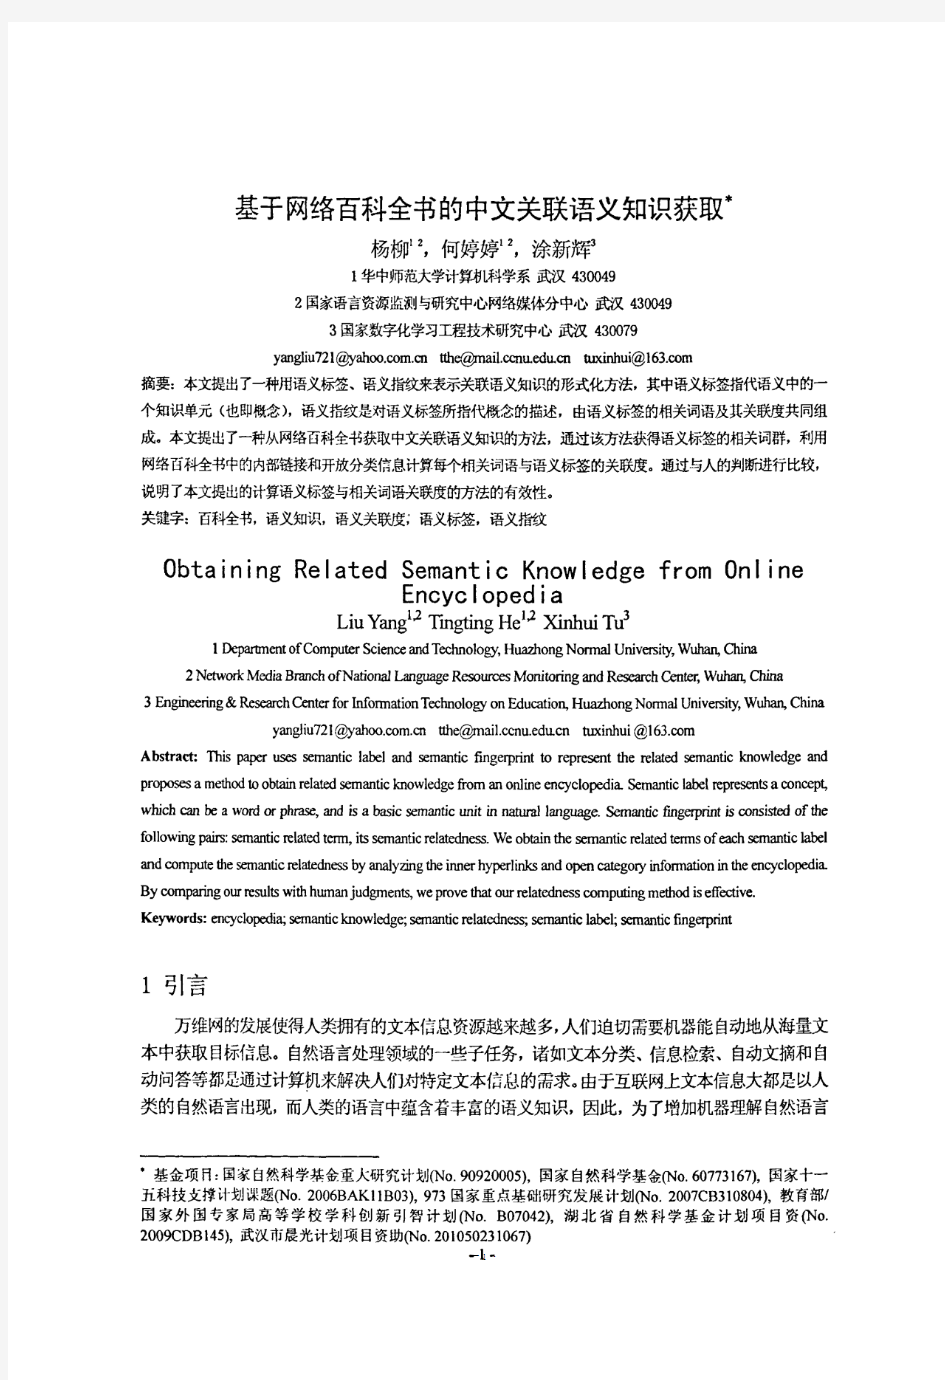 基于网络百科全书的中文关联语义知识获取